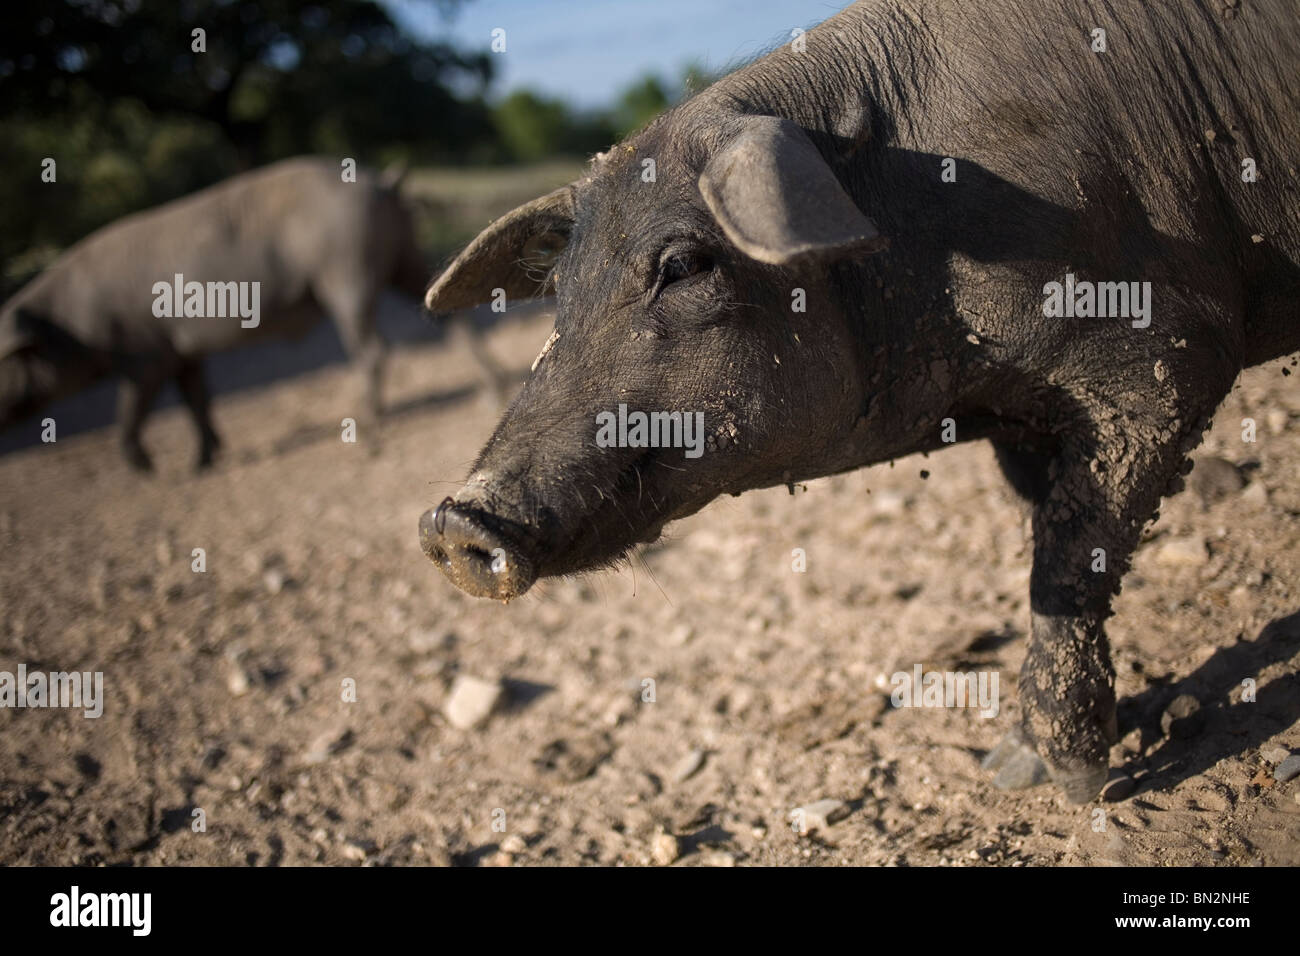 Español de cerdos ibéricos, la fuente de jamón ibérico conocido como pata negra, pasear por el campo Foto de stock